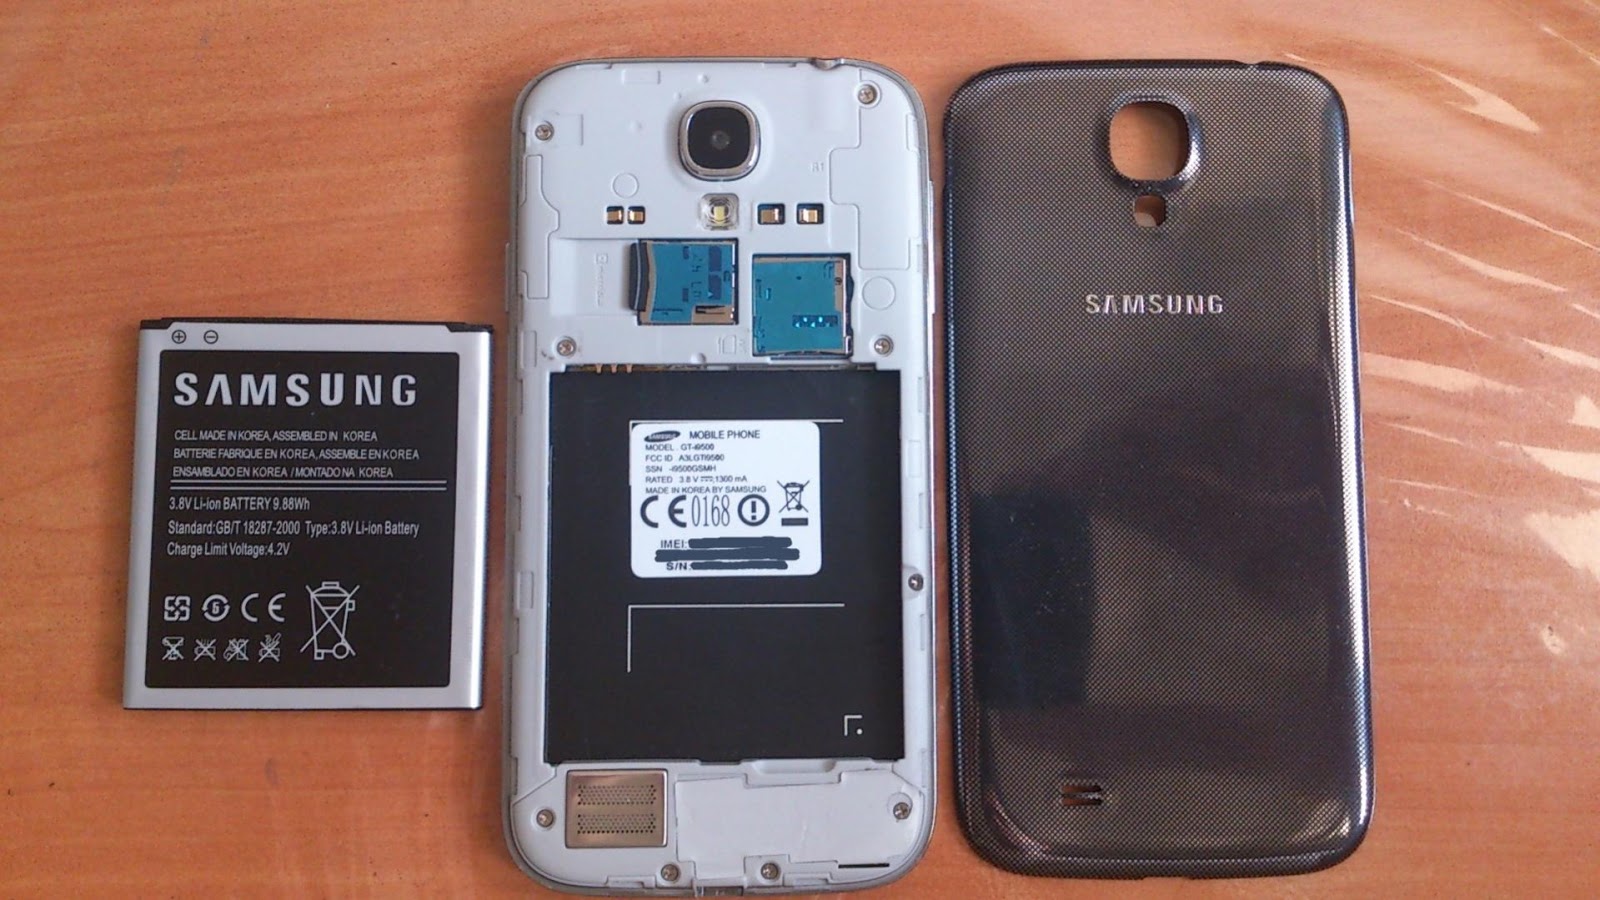 Samsung gt-i9500